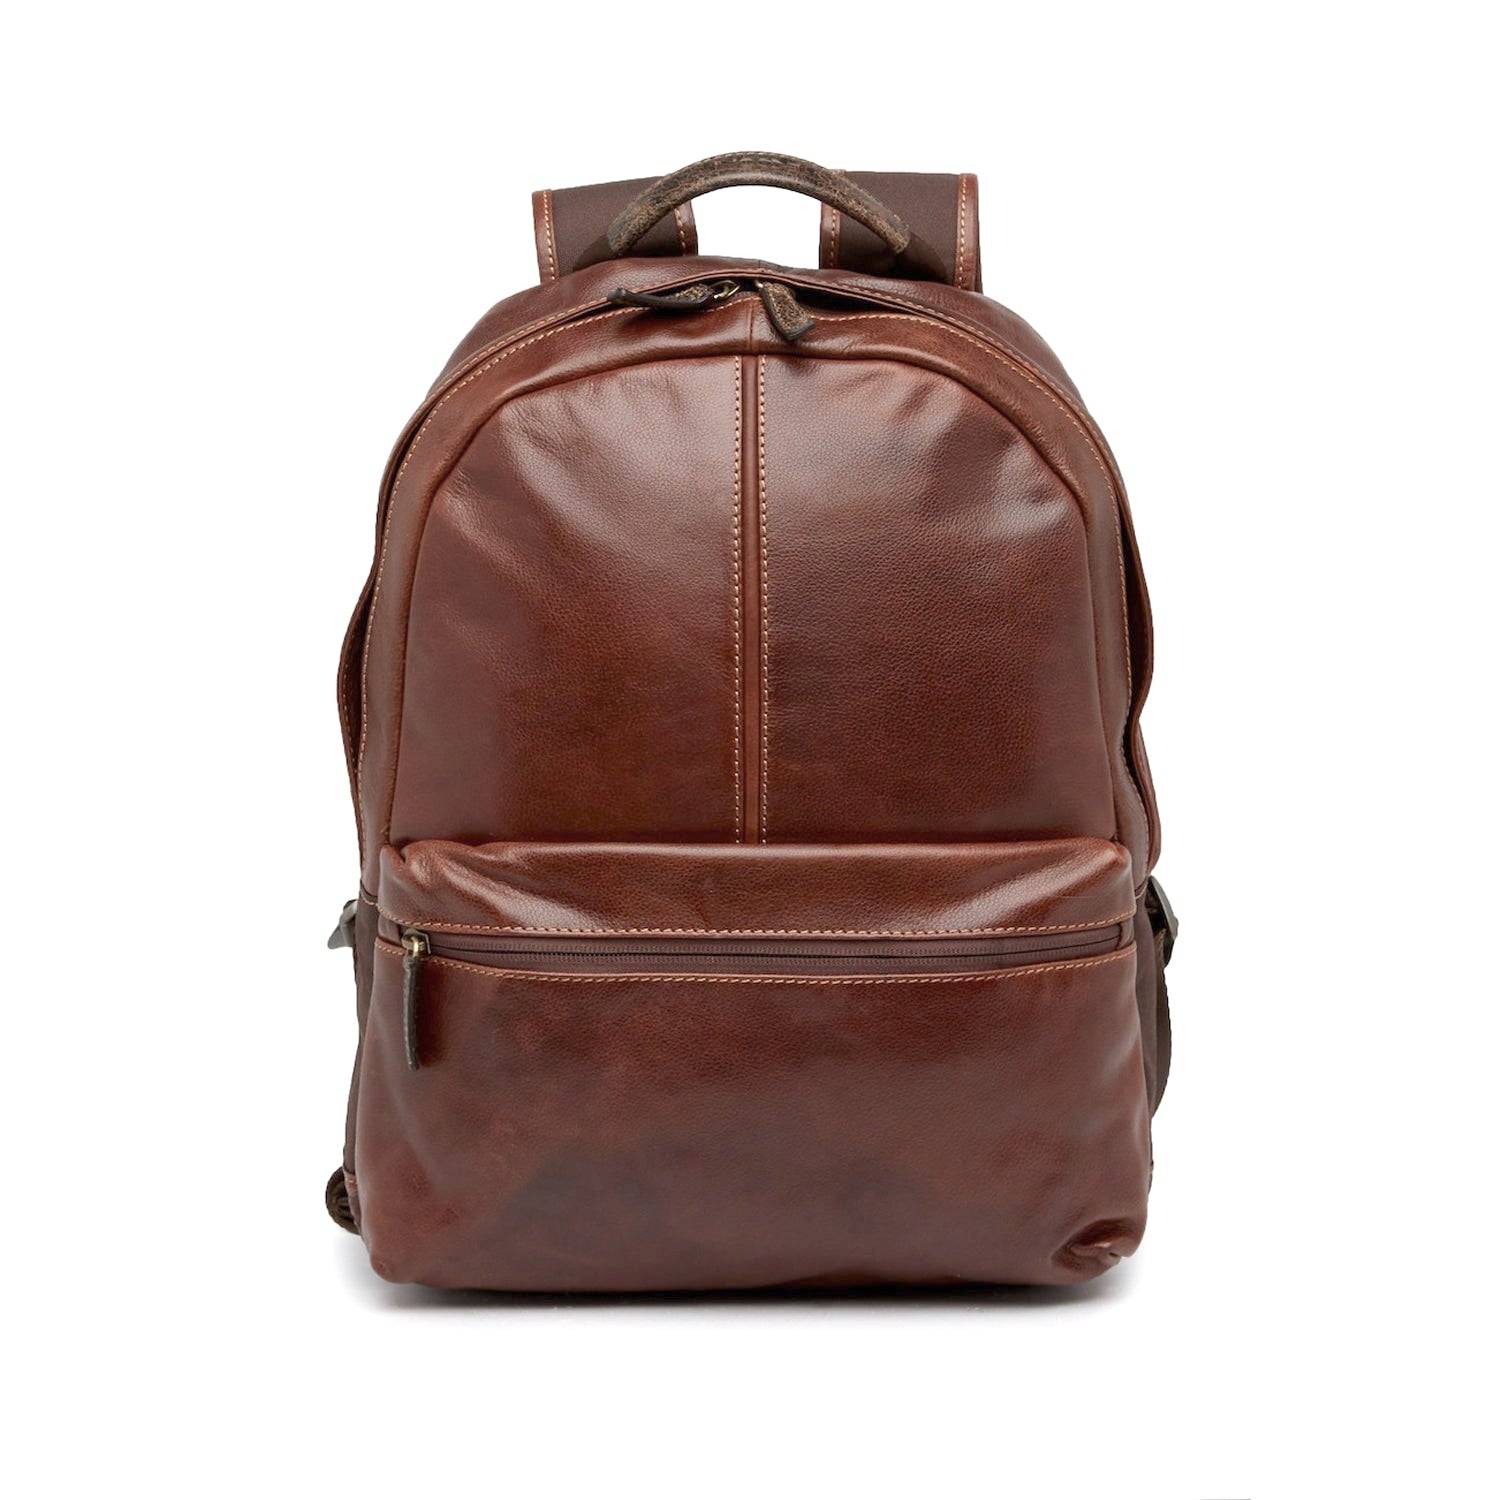 Michael Kors Rhea Medium Slim Backpack - Brown for sale online | eBay